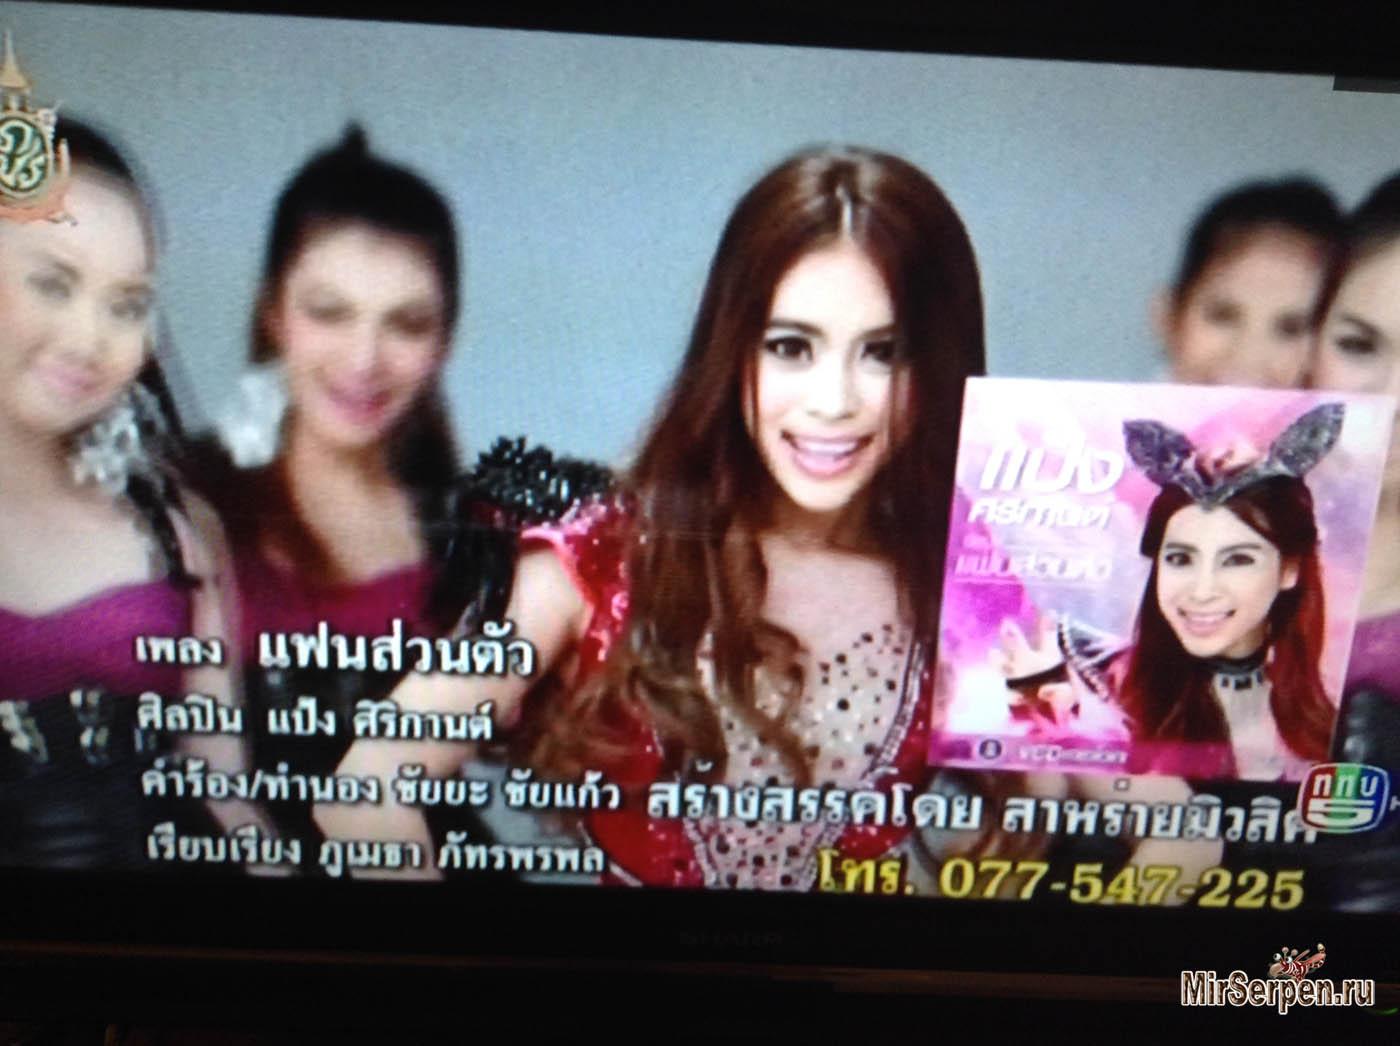 Thai Pop musical group on YourTube